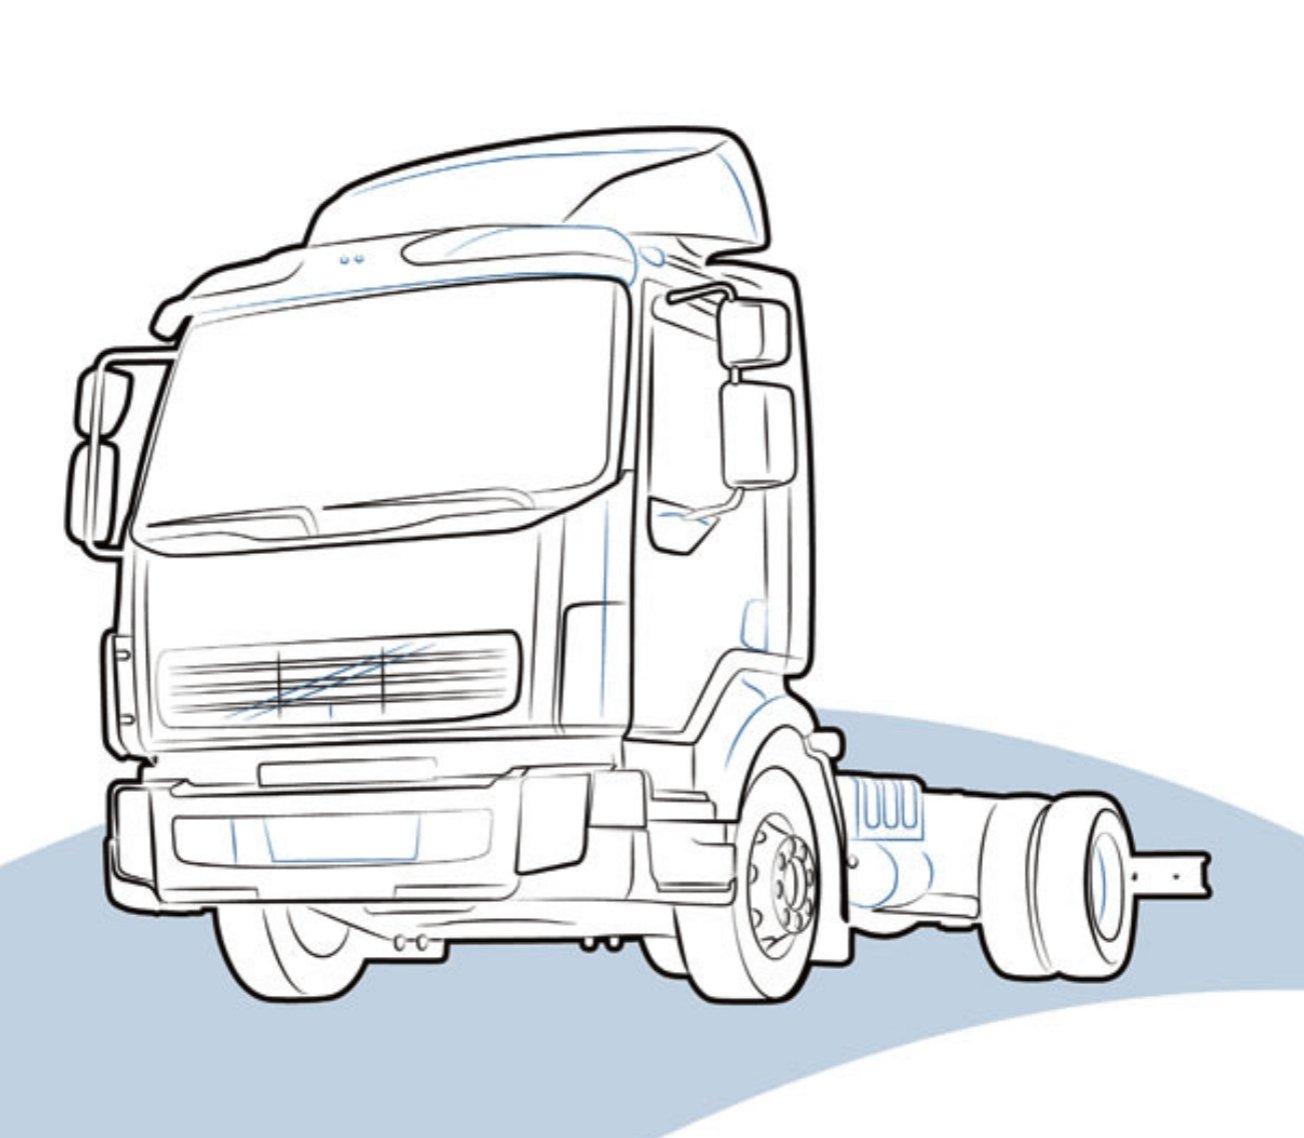 PANNELLO INFERIORE DAF LF - 1401828 - Carrozzeria Truck